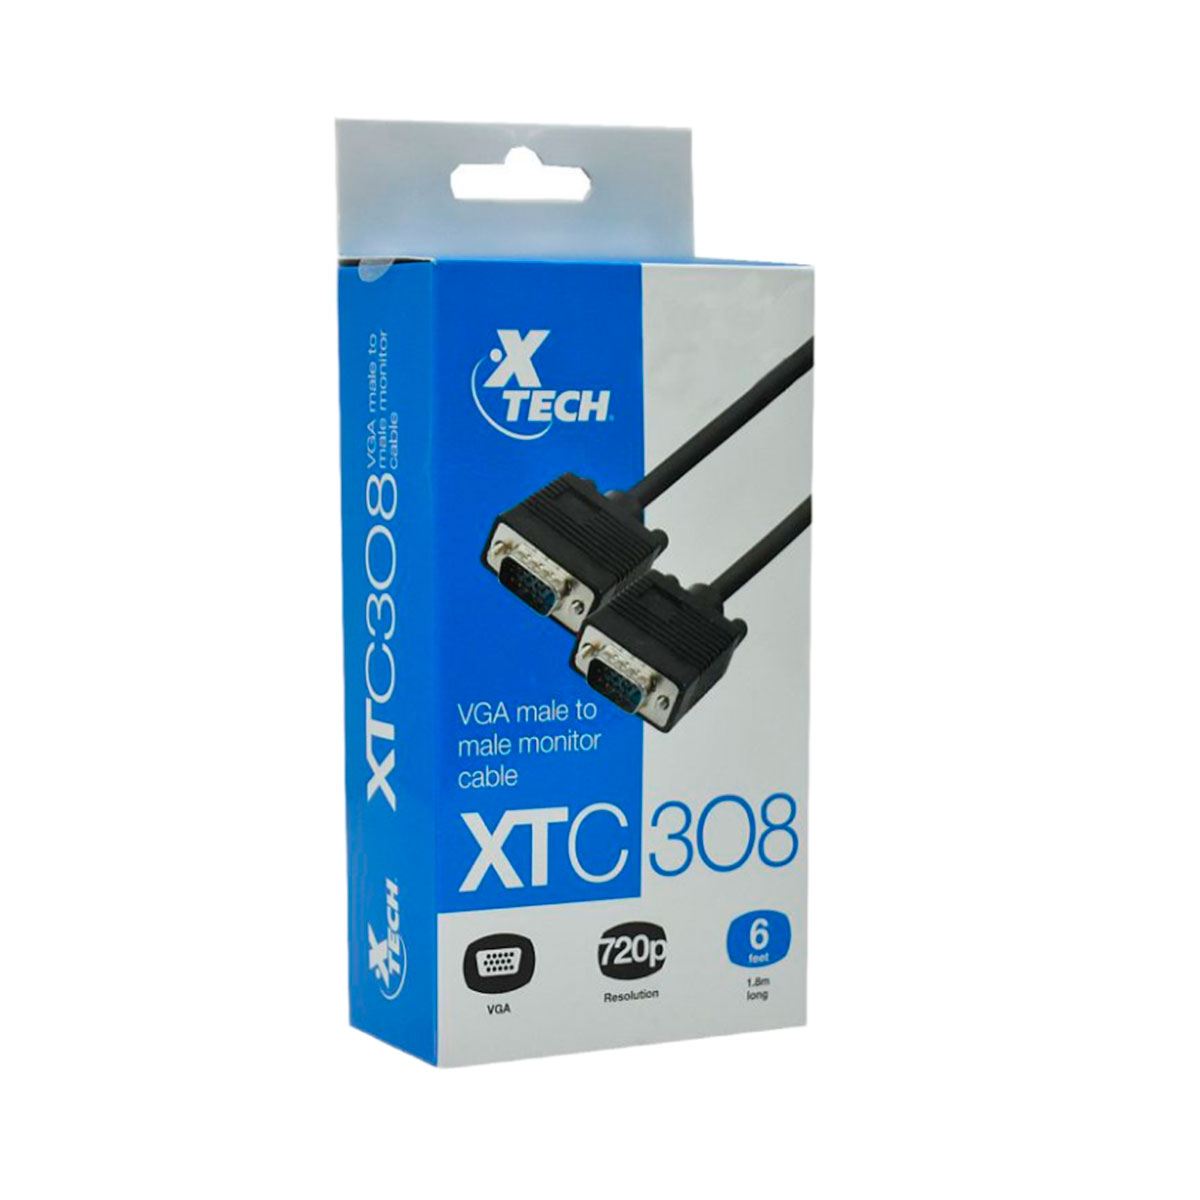 XTC-308 XTECH                                                        | CABLE VGA 1.8 METROS                                                                                                                                                                                                                            